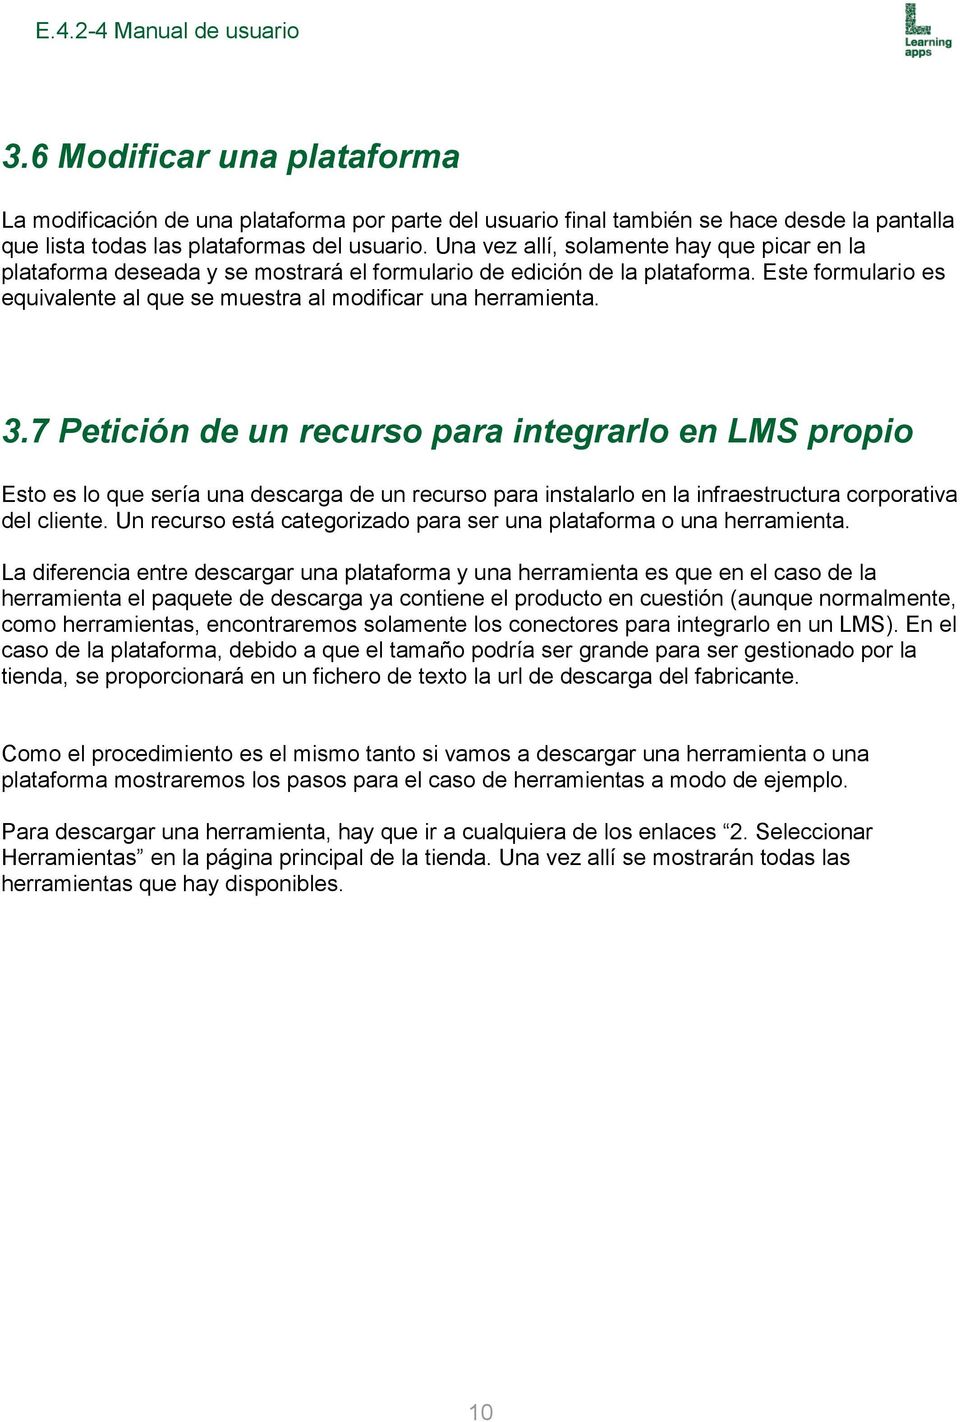 3.7 Petición de un recurso para integrarlo en LMS propio Esto es lo que sería una descarga de un recurso para instalarlo en la infraestructura corporativa del cliente.